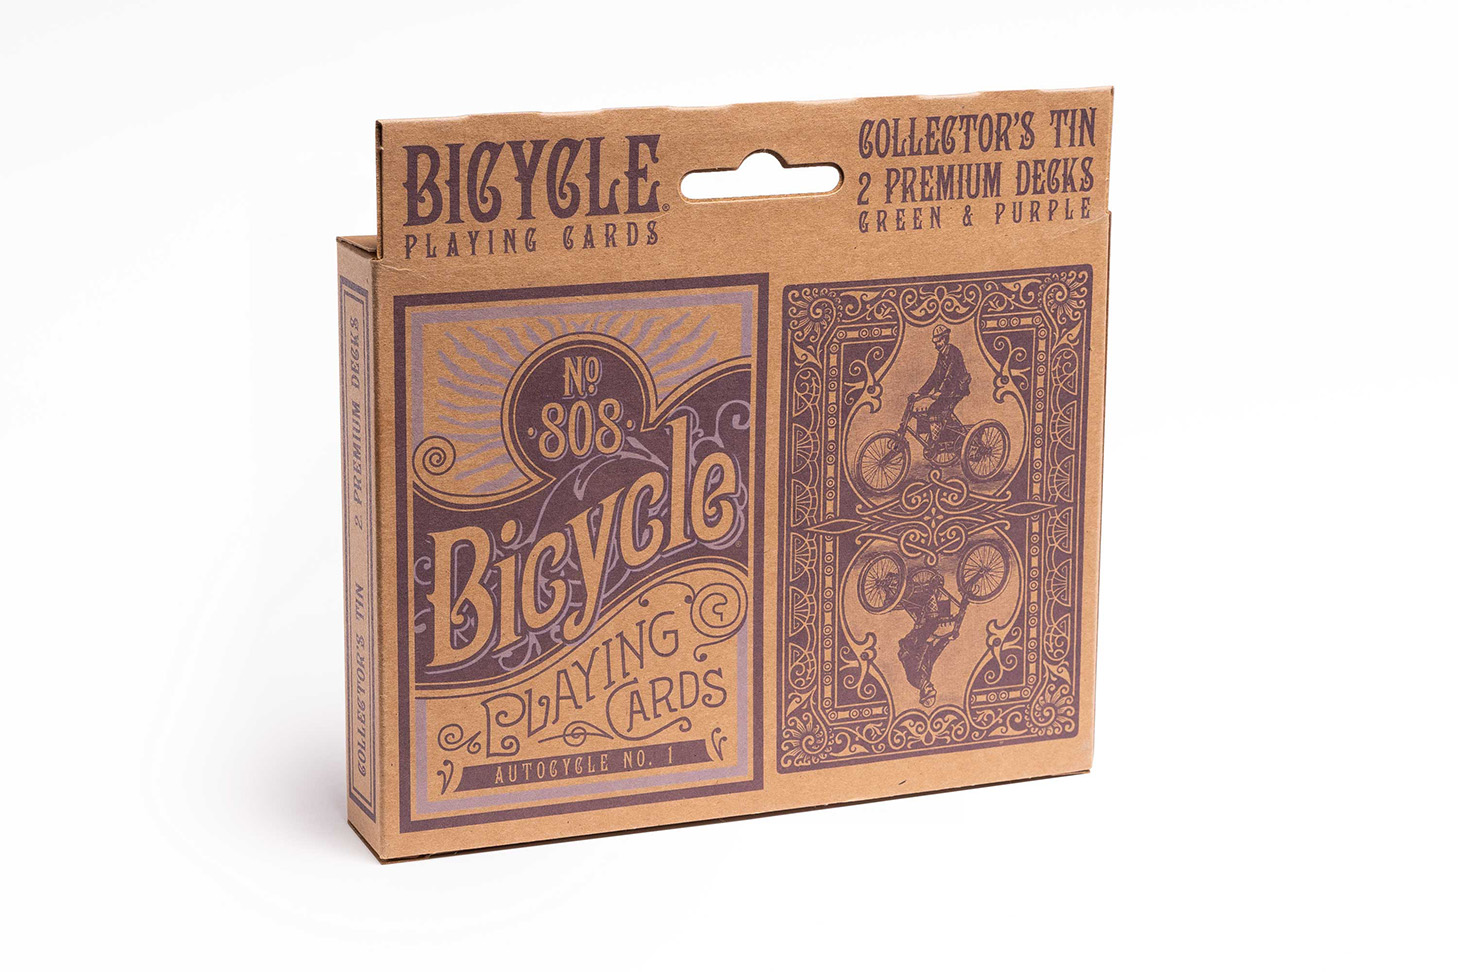 Bicycle Autocycle - Premium Bicycle Collectors Tin Playing Cards - Rückseite mit elegantem Design für anspruchsvolle Kartenspiele und Magie.